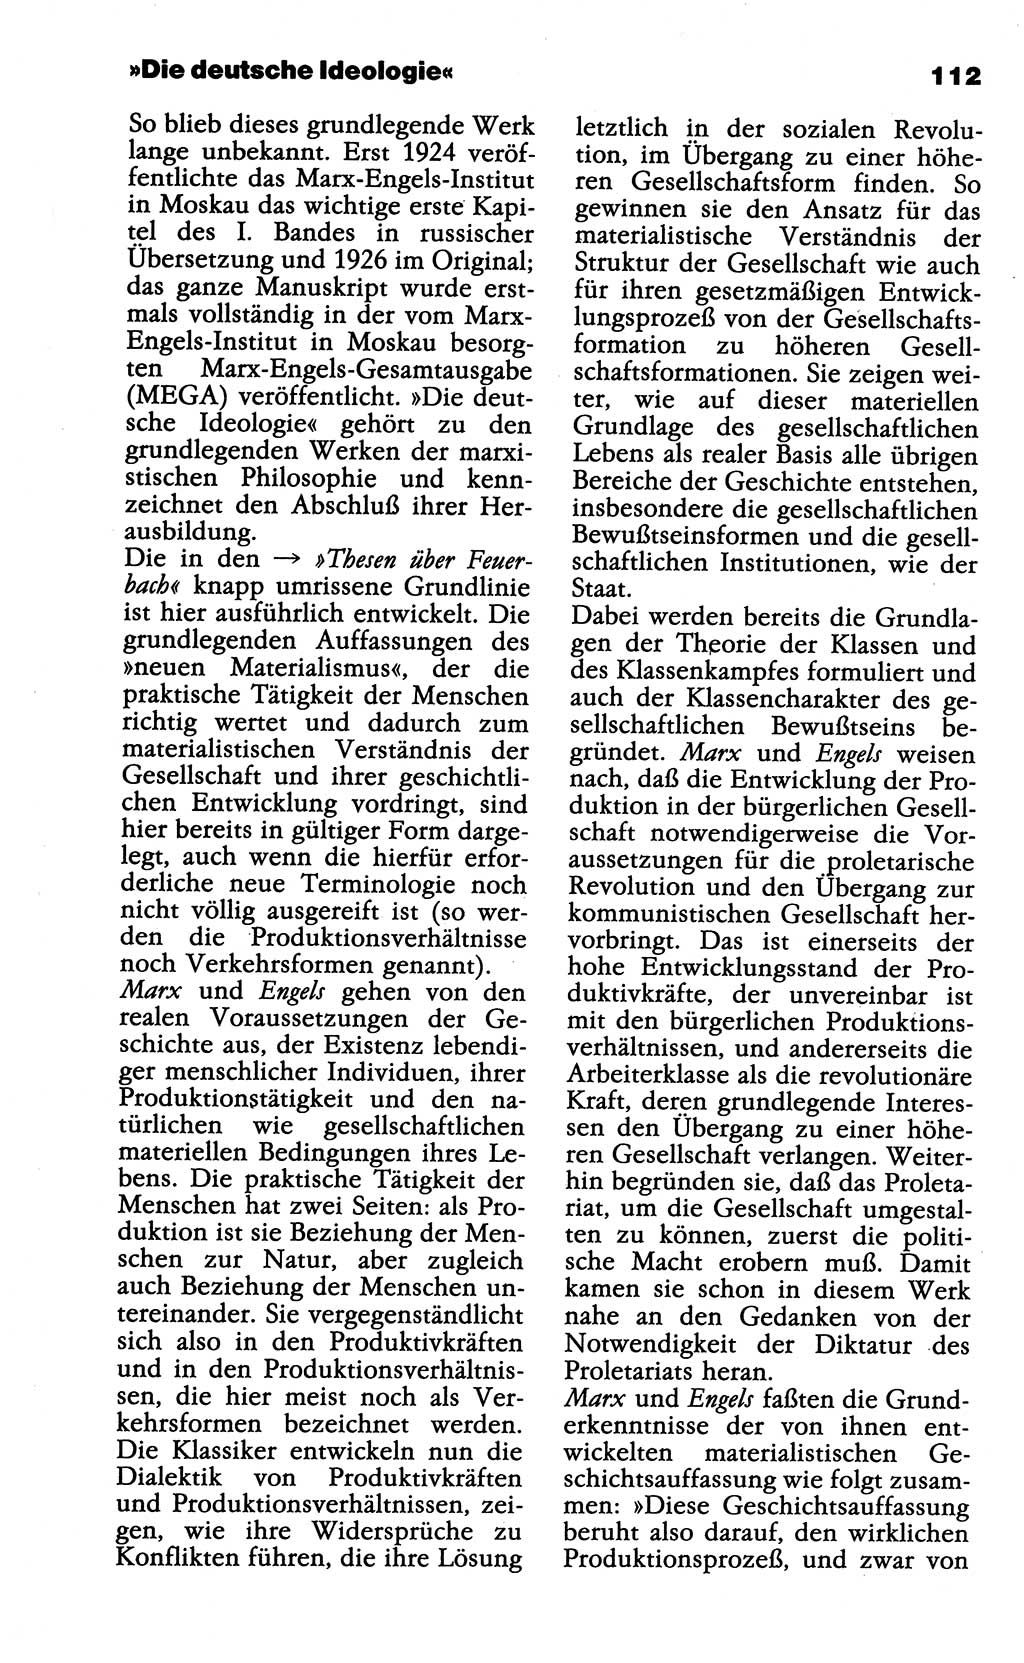 Wörterbuch der marxistisch-leninistischen Philosophie [Deutsche Demokratische Republik (DDR)] 1985, Seite 112 (Wb. ML Phil. DDR 1985, S. 112)